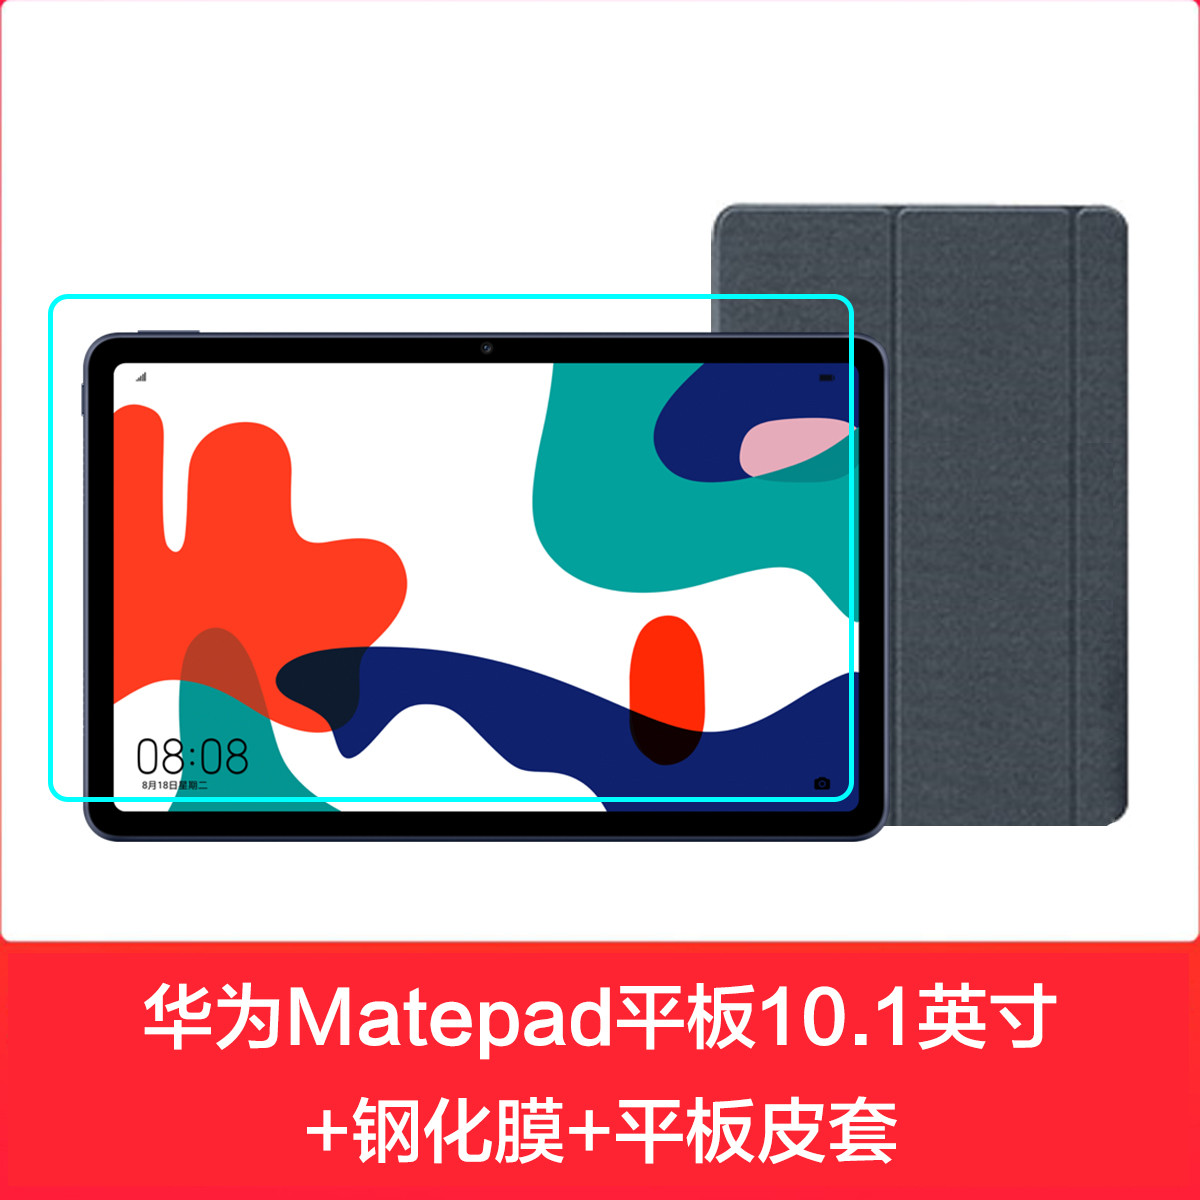 1888元包邮 HUAWEI 华为 MatePad 平板电脑 10.4英寸 4GB+64GB WIFI 白